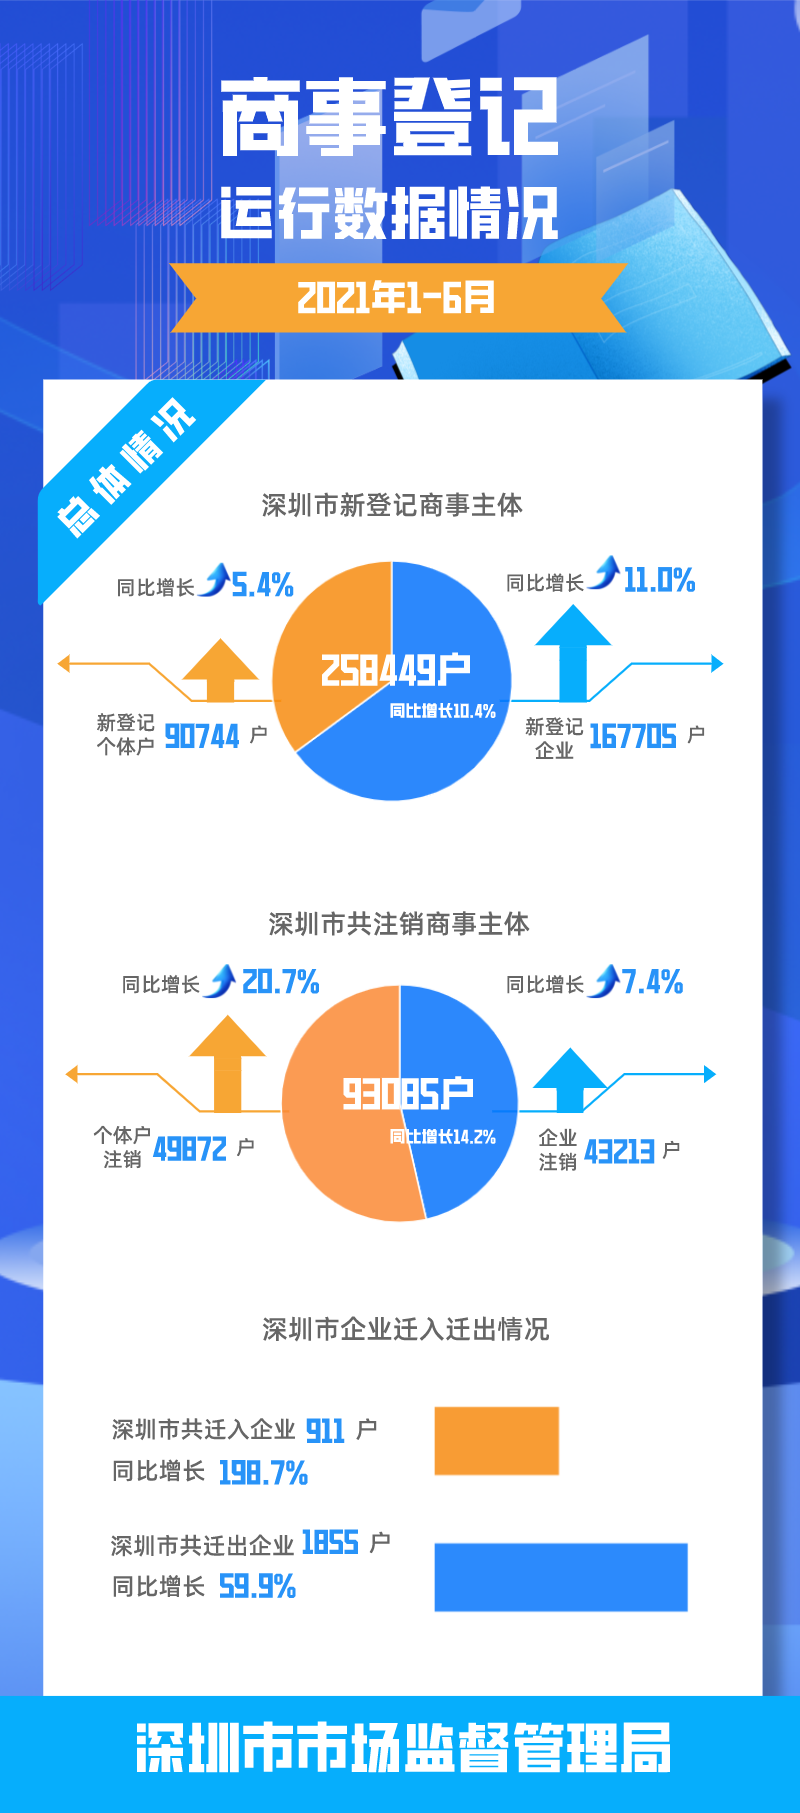 深圳市2021年1-6月商事登记运行数据情况.png